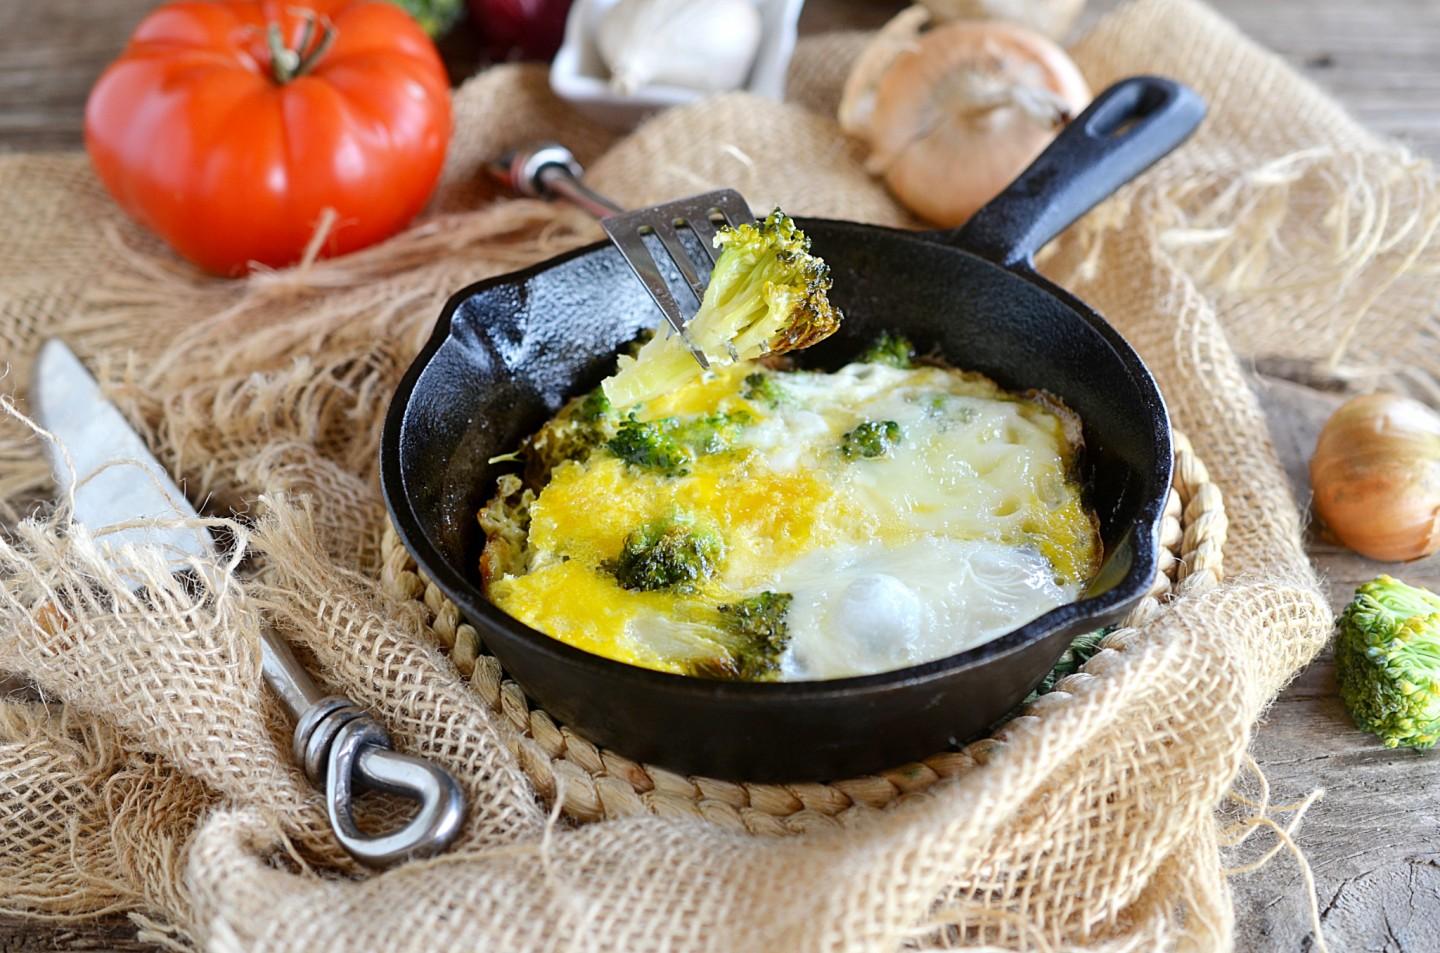 Брокколи с яйцом на сковороде рецепт с фото